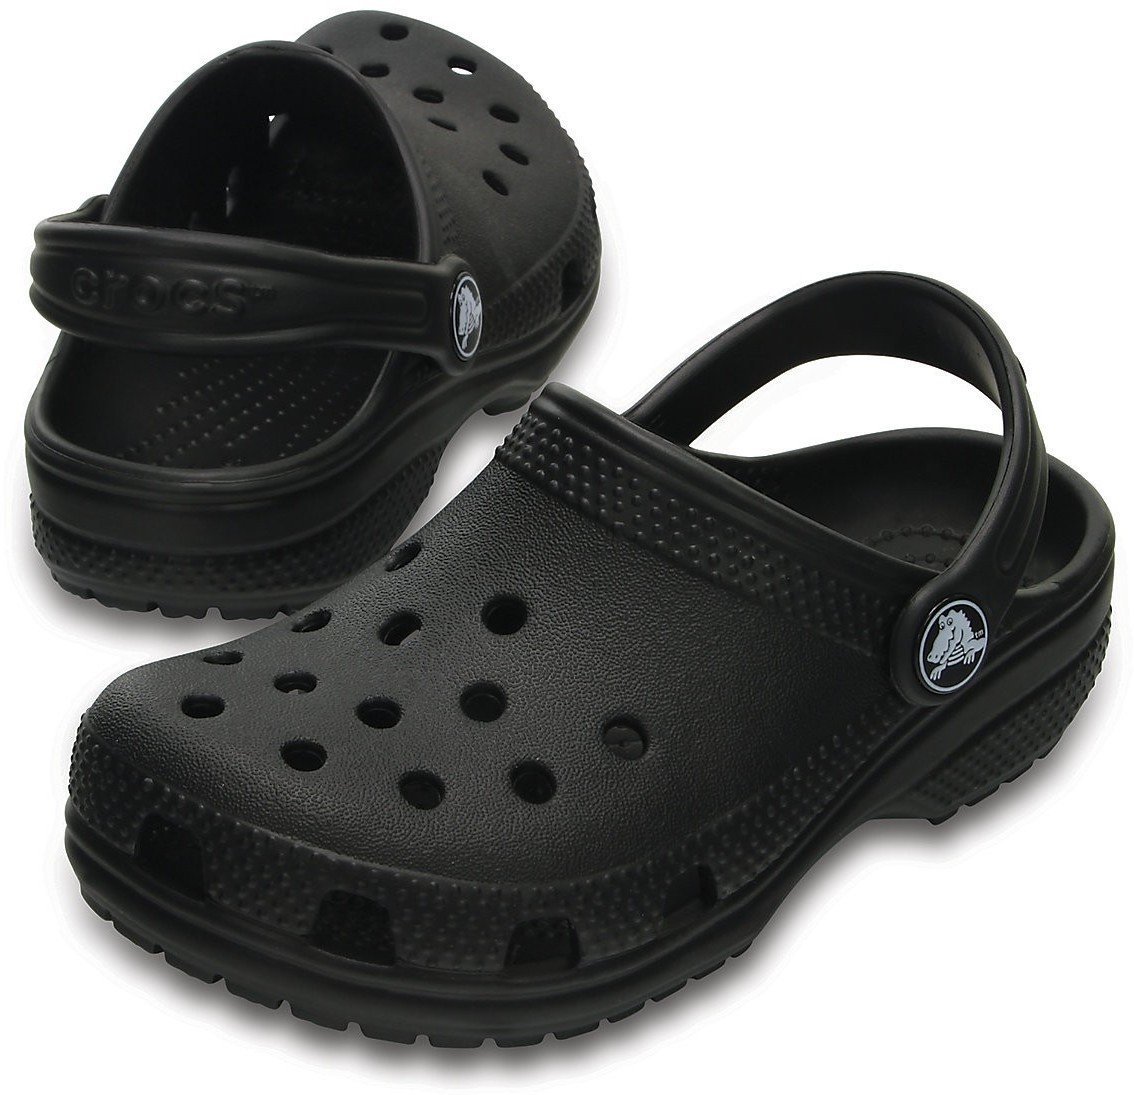 Buty żeglarskie dla dzieci Crocs Kids' Classic Clog Black 20-21